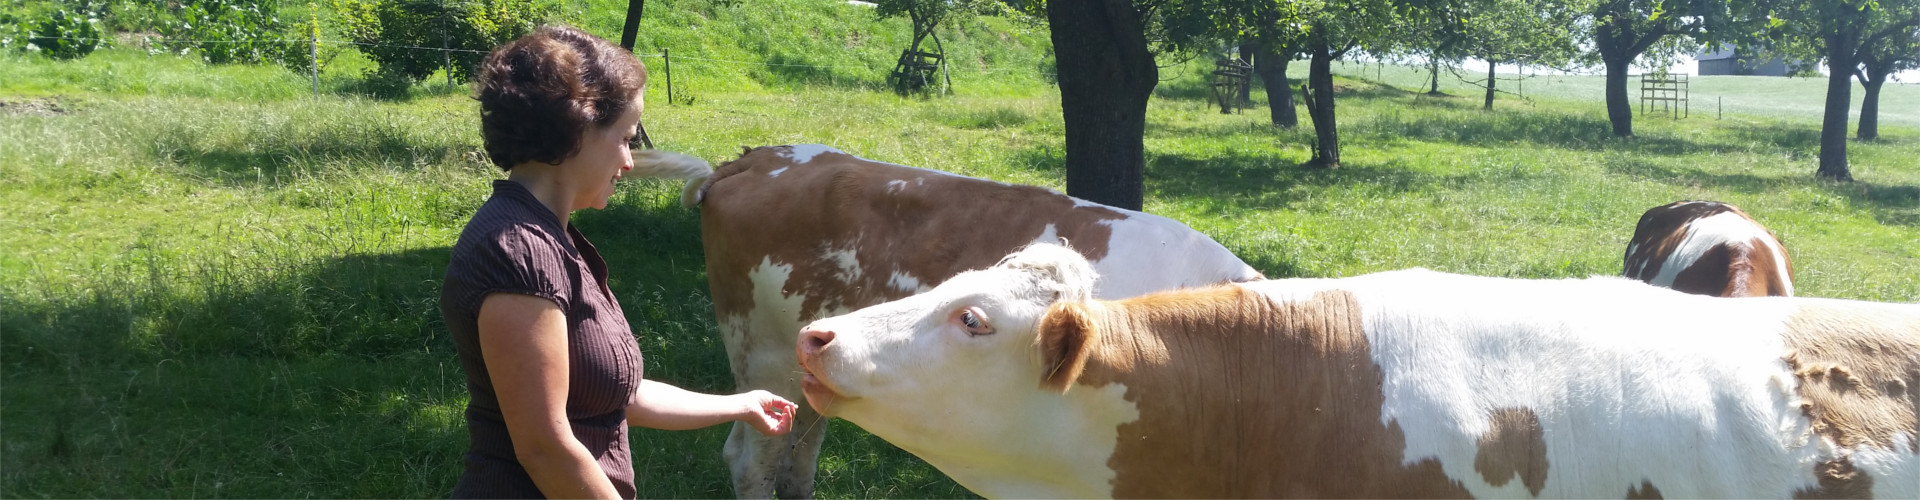 Christiane füttert Kuh mit der Hand